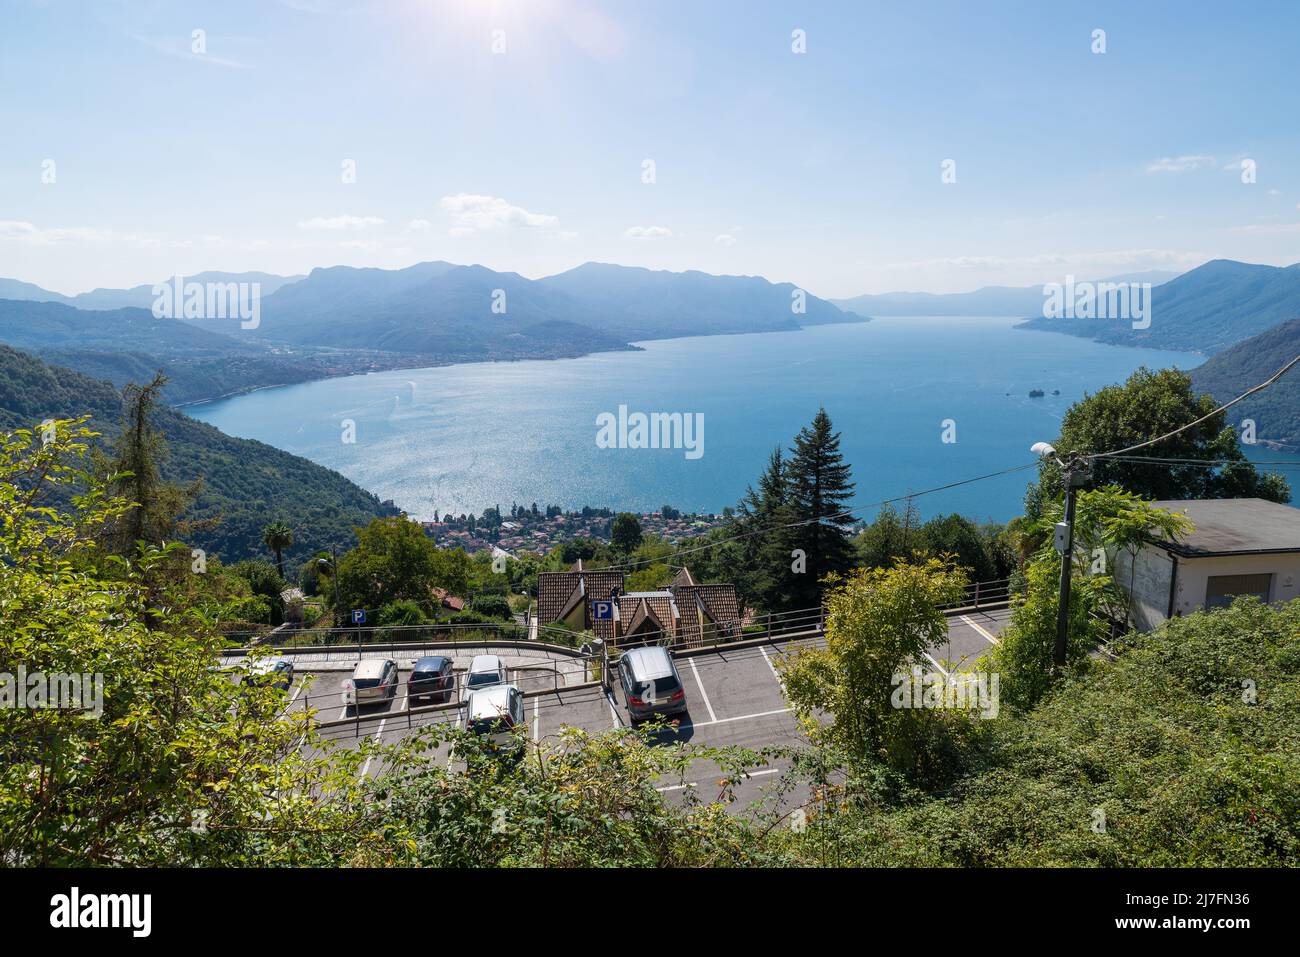 Gran lago italiano. Lago Maggiore de Campagnano sobre Maccagno, visible abajo. Norte de Italia, vista aérea Foto de stock